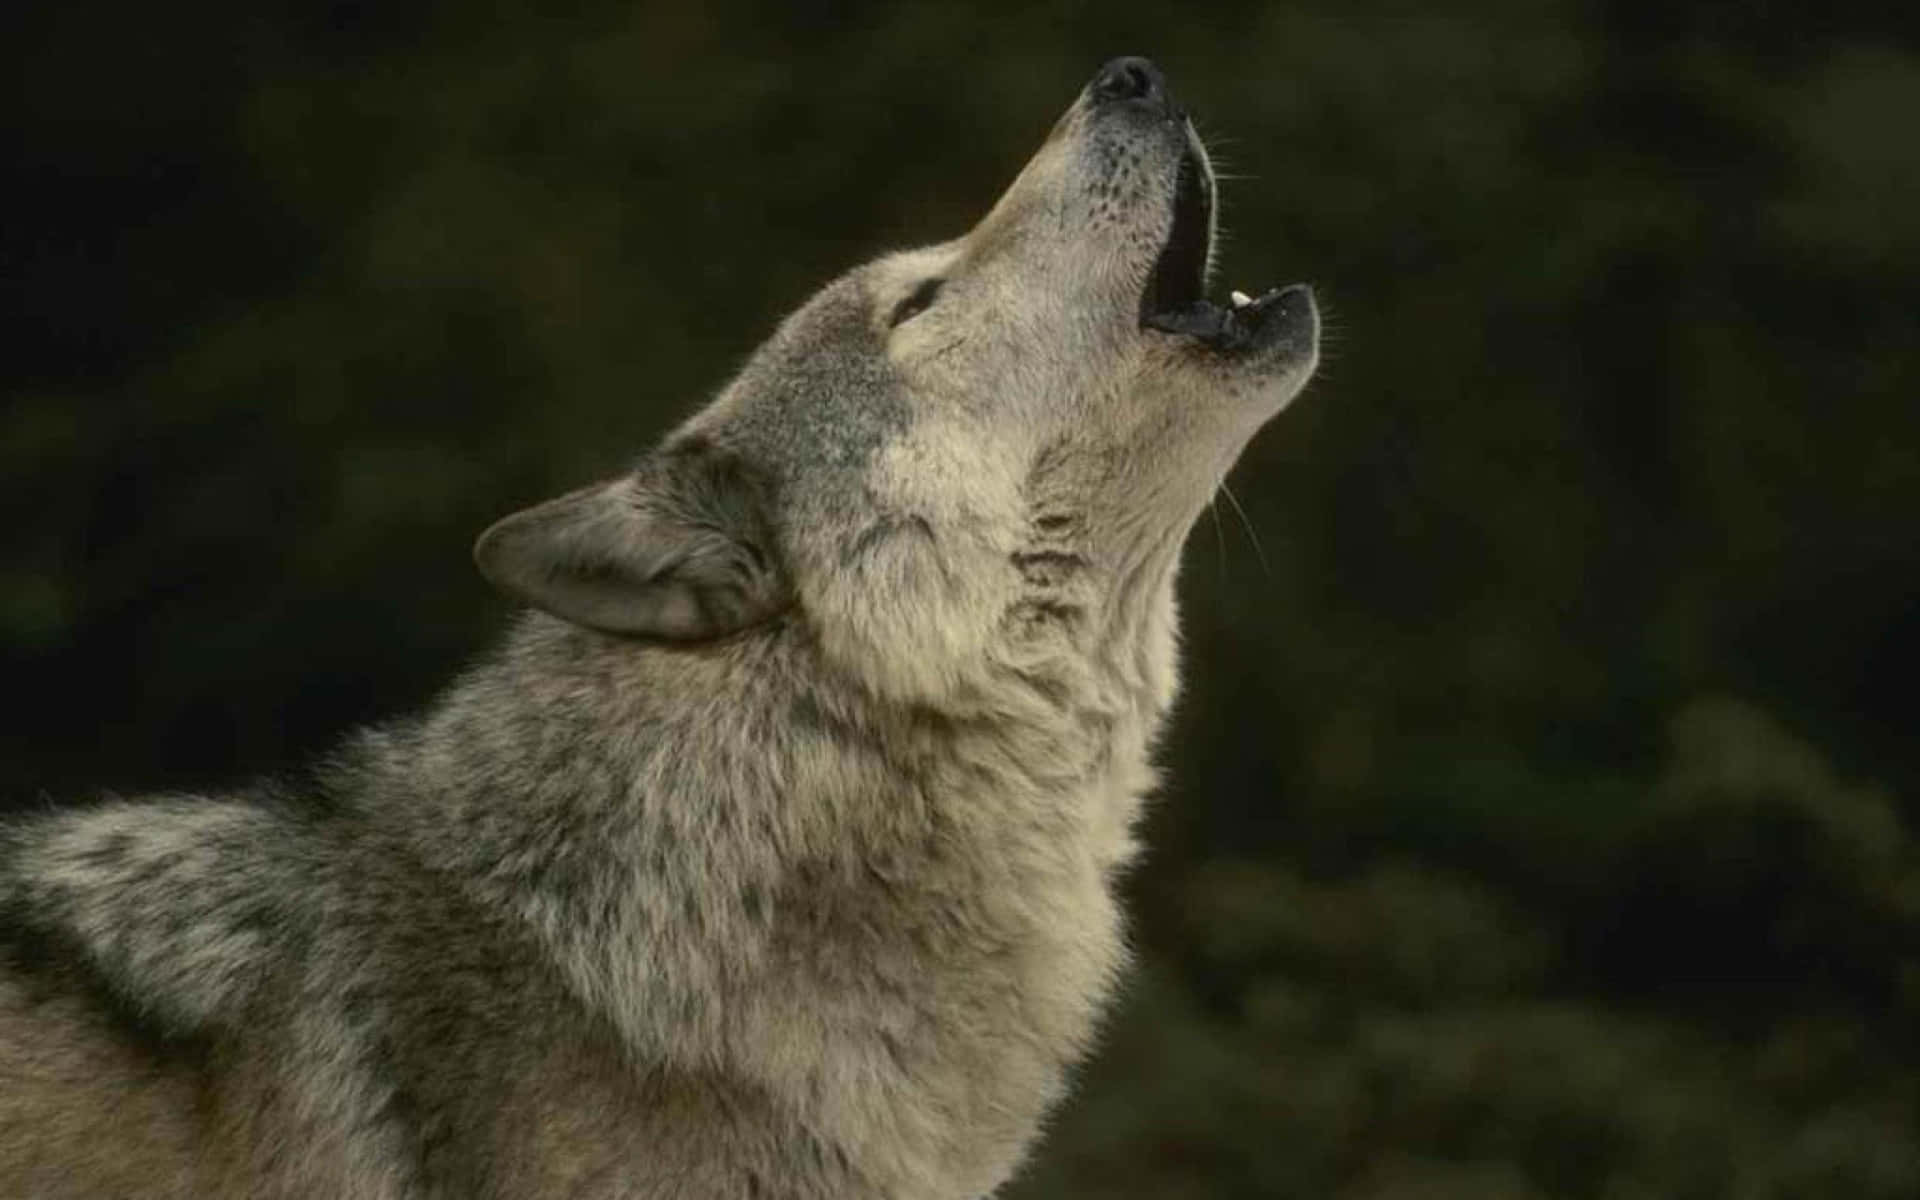 wolf howling wallpaper hd